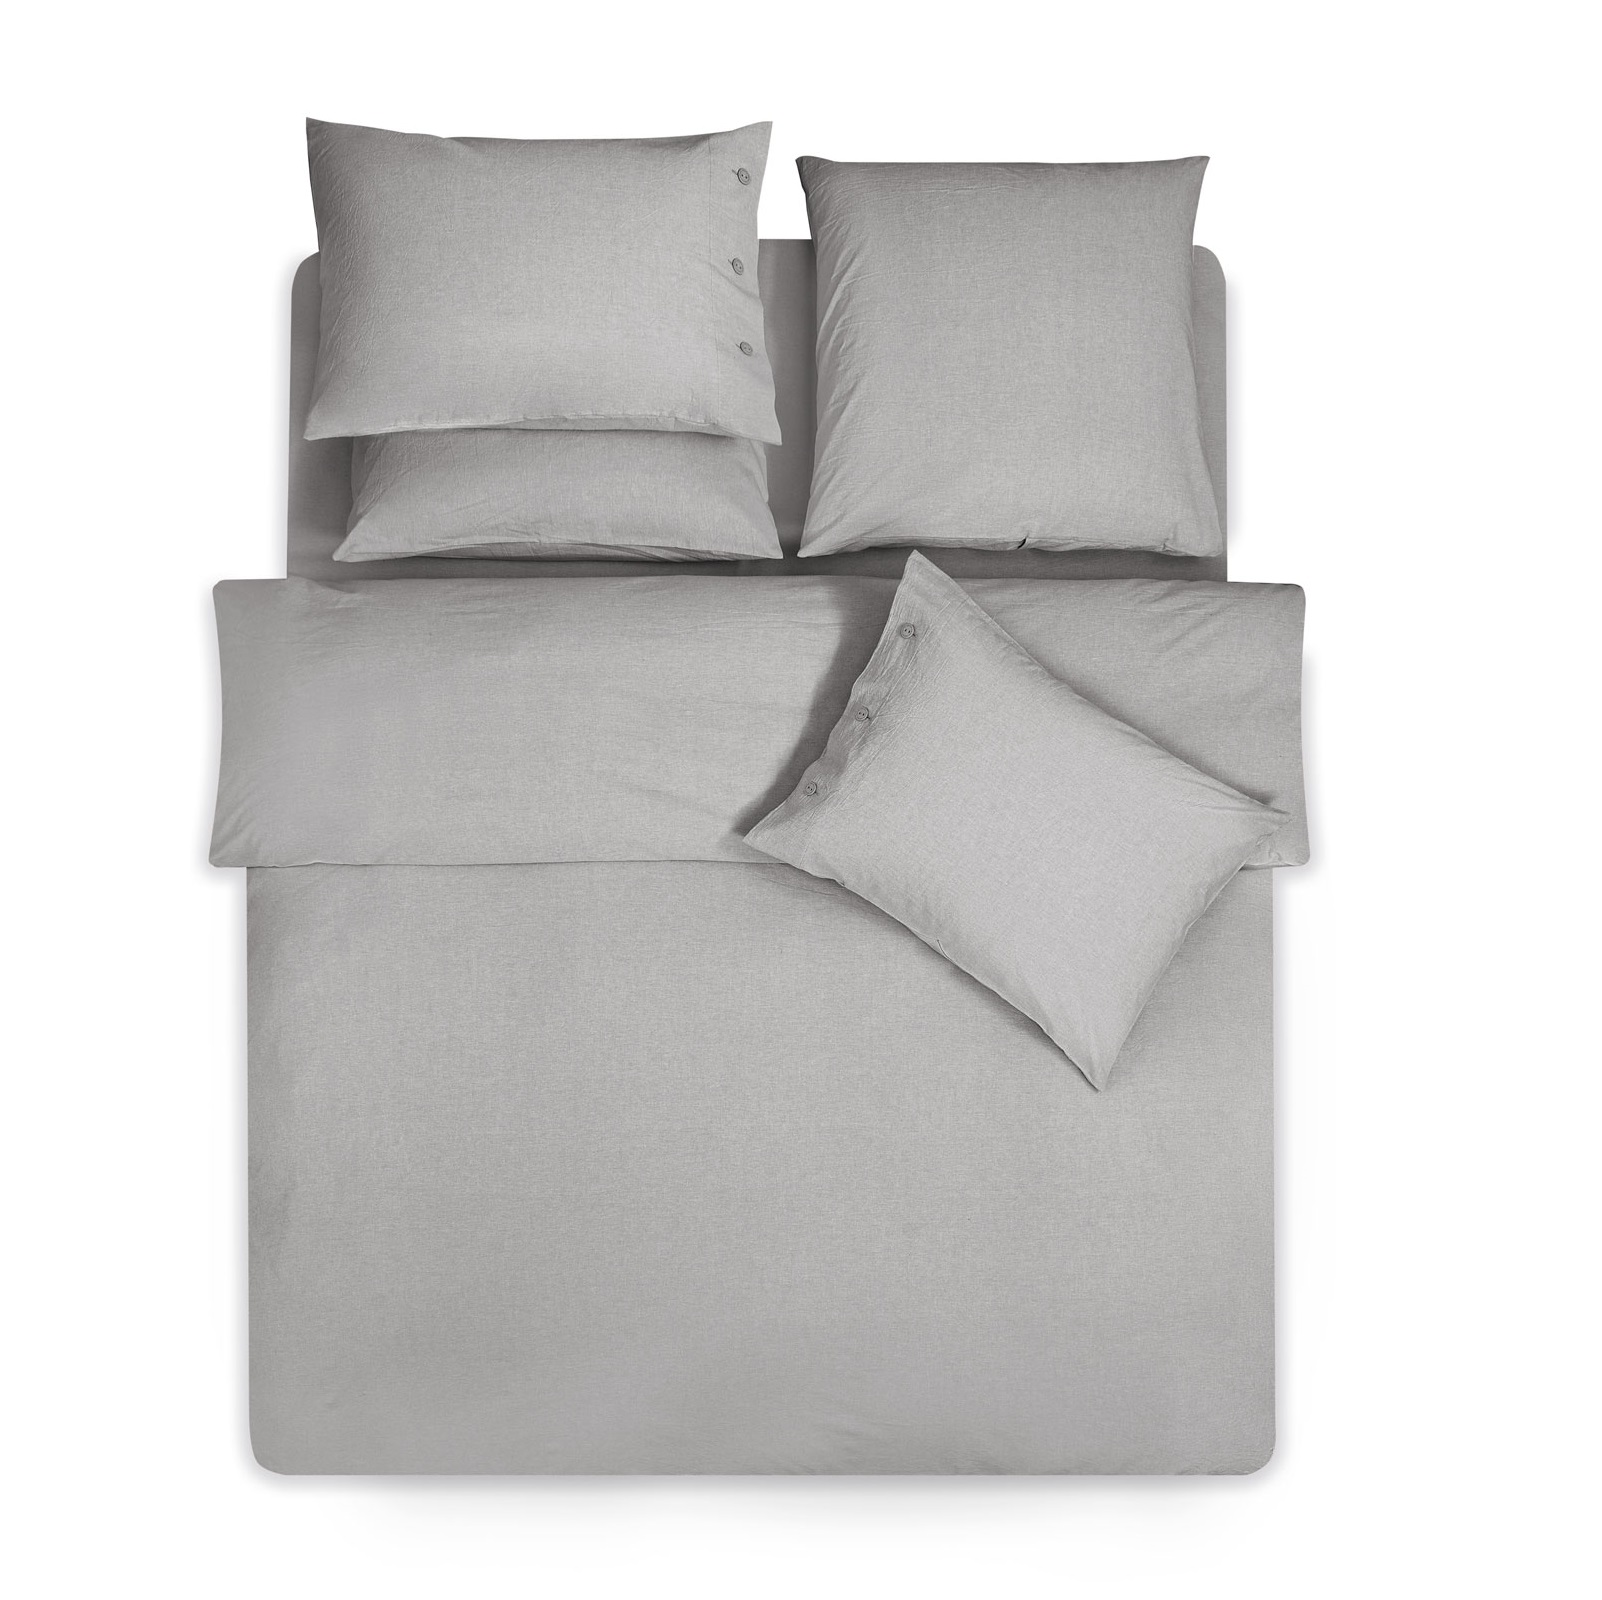 Комплект постельного белья Prime Prive Смоген Двуспальный кинг сайз светло-серый, размер Кинг сайз - фото 4